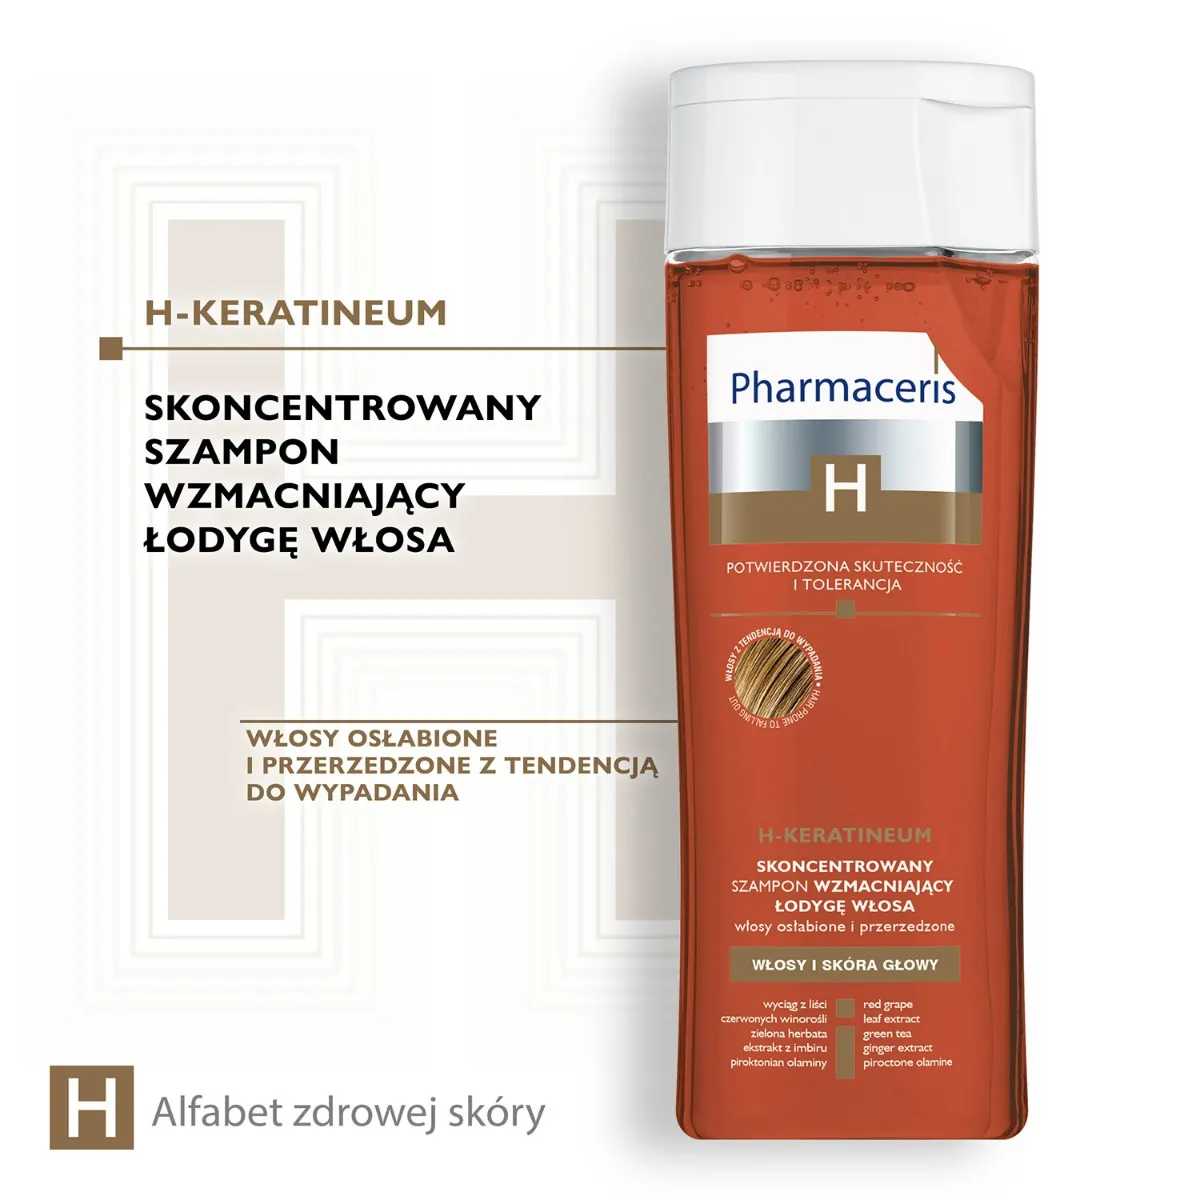 Pharmaceris H Keratineum, skoncentrowany szampon wzmacniający łodygę włosa, 250 ml 